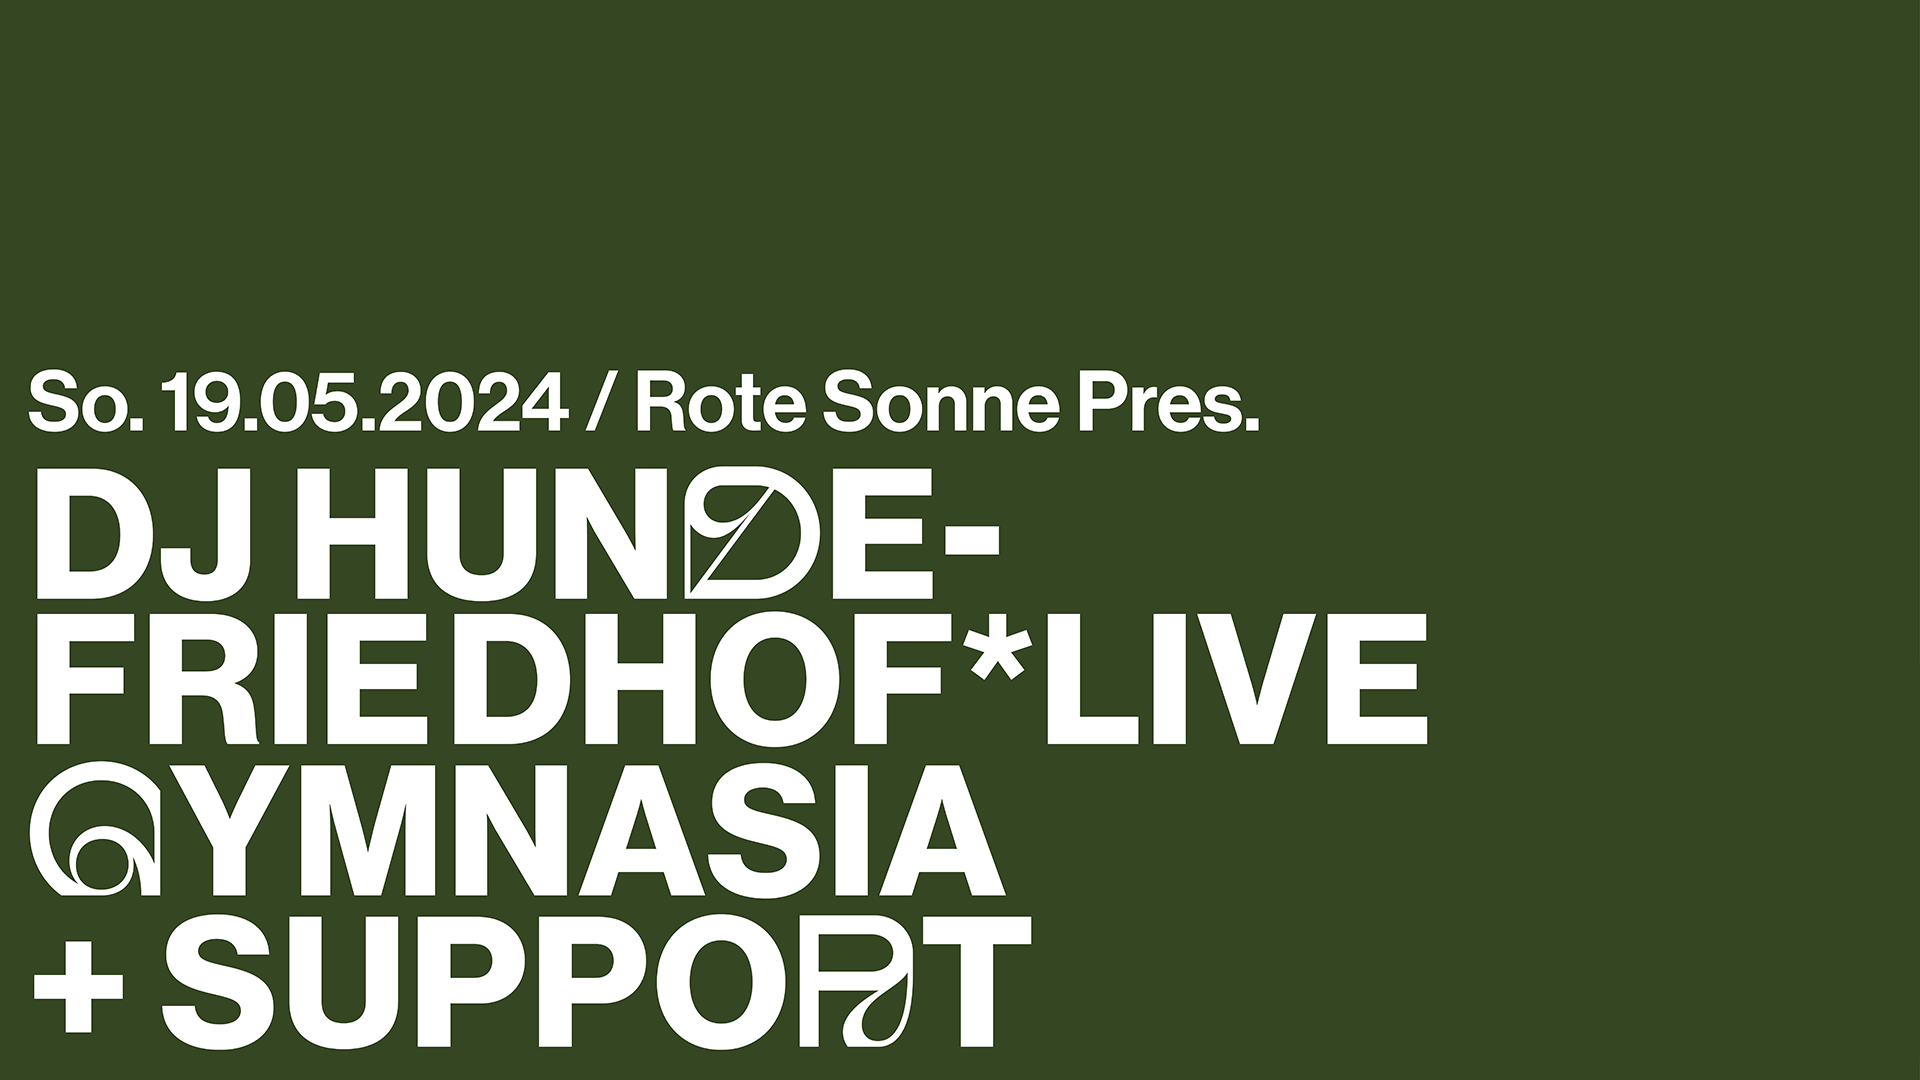 Rote Sonne pres. DJ HUNDEFRIEDHOF*live + Aftershow - Página frontal